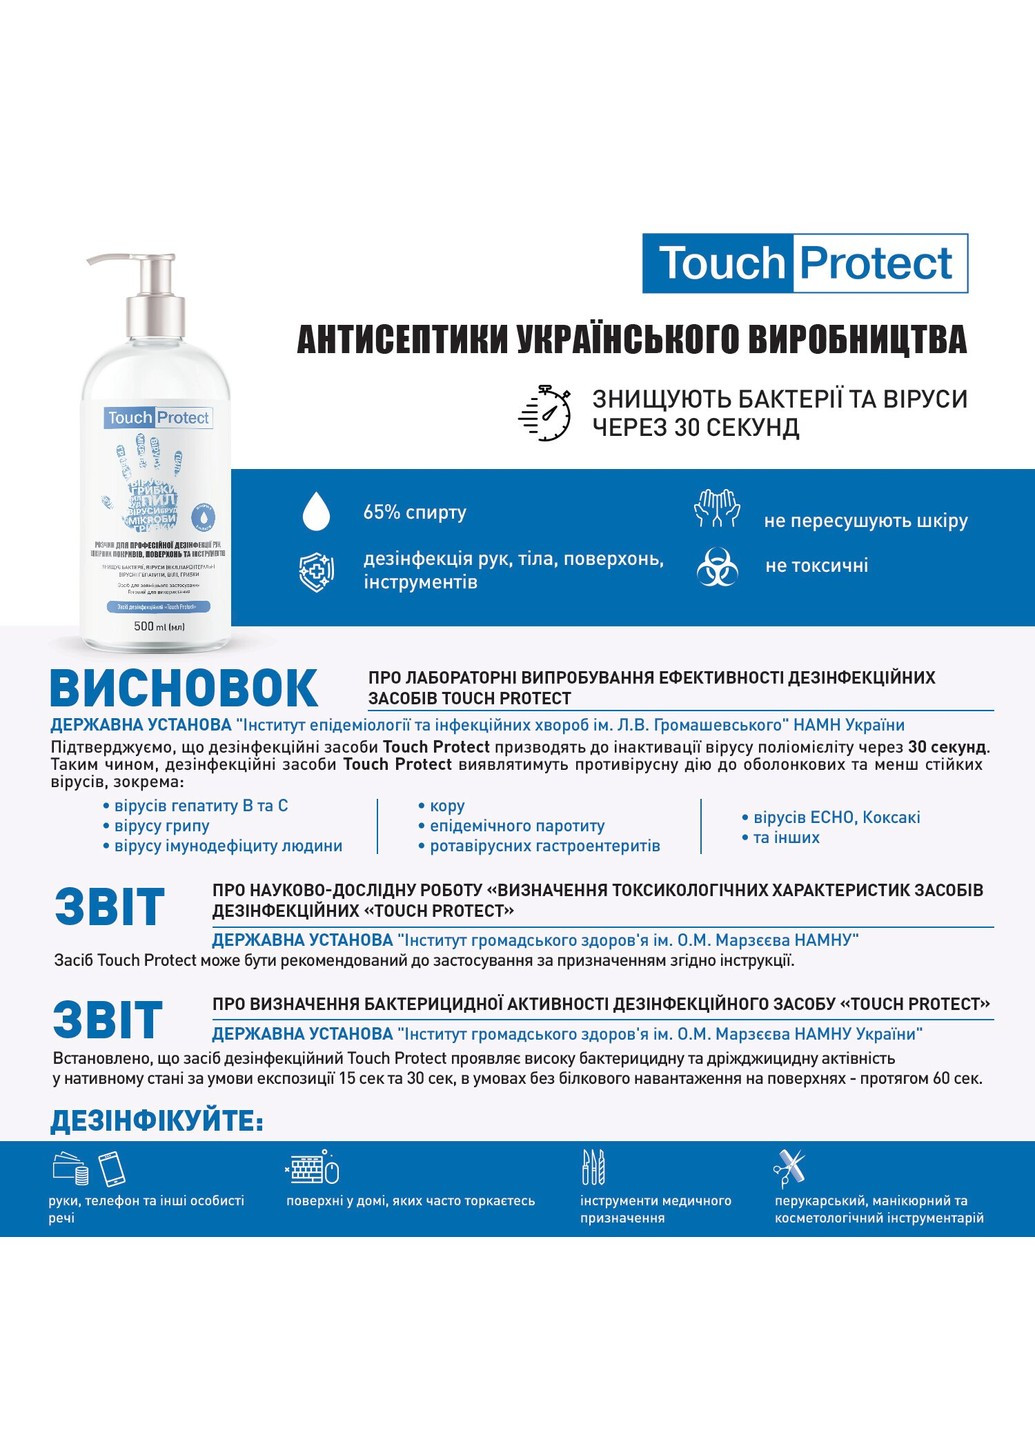 Антисептик гель для дезинфекции рук, тела и поверхностей 10 л Touch Protect (255417767)